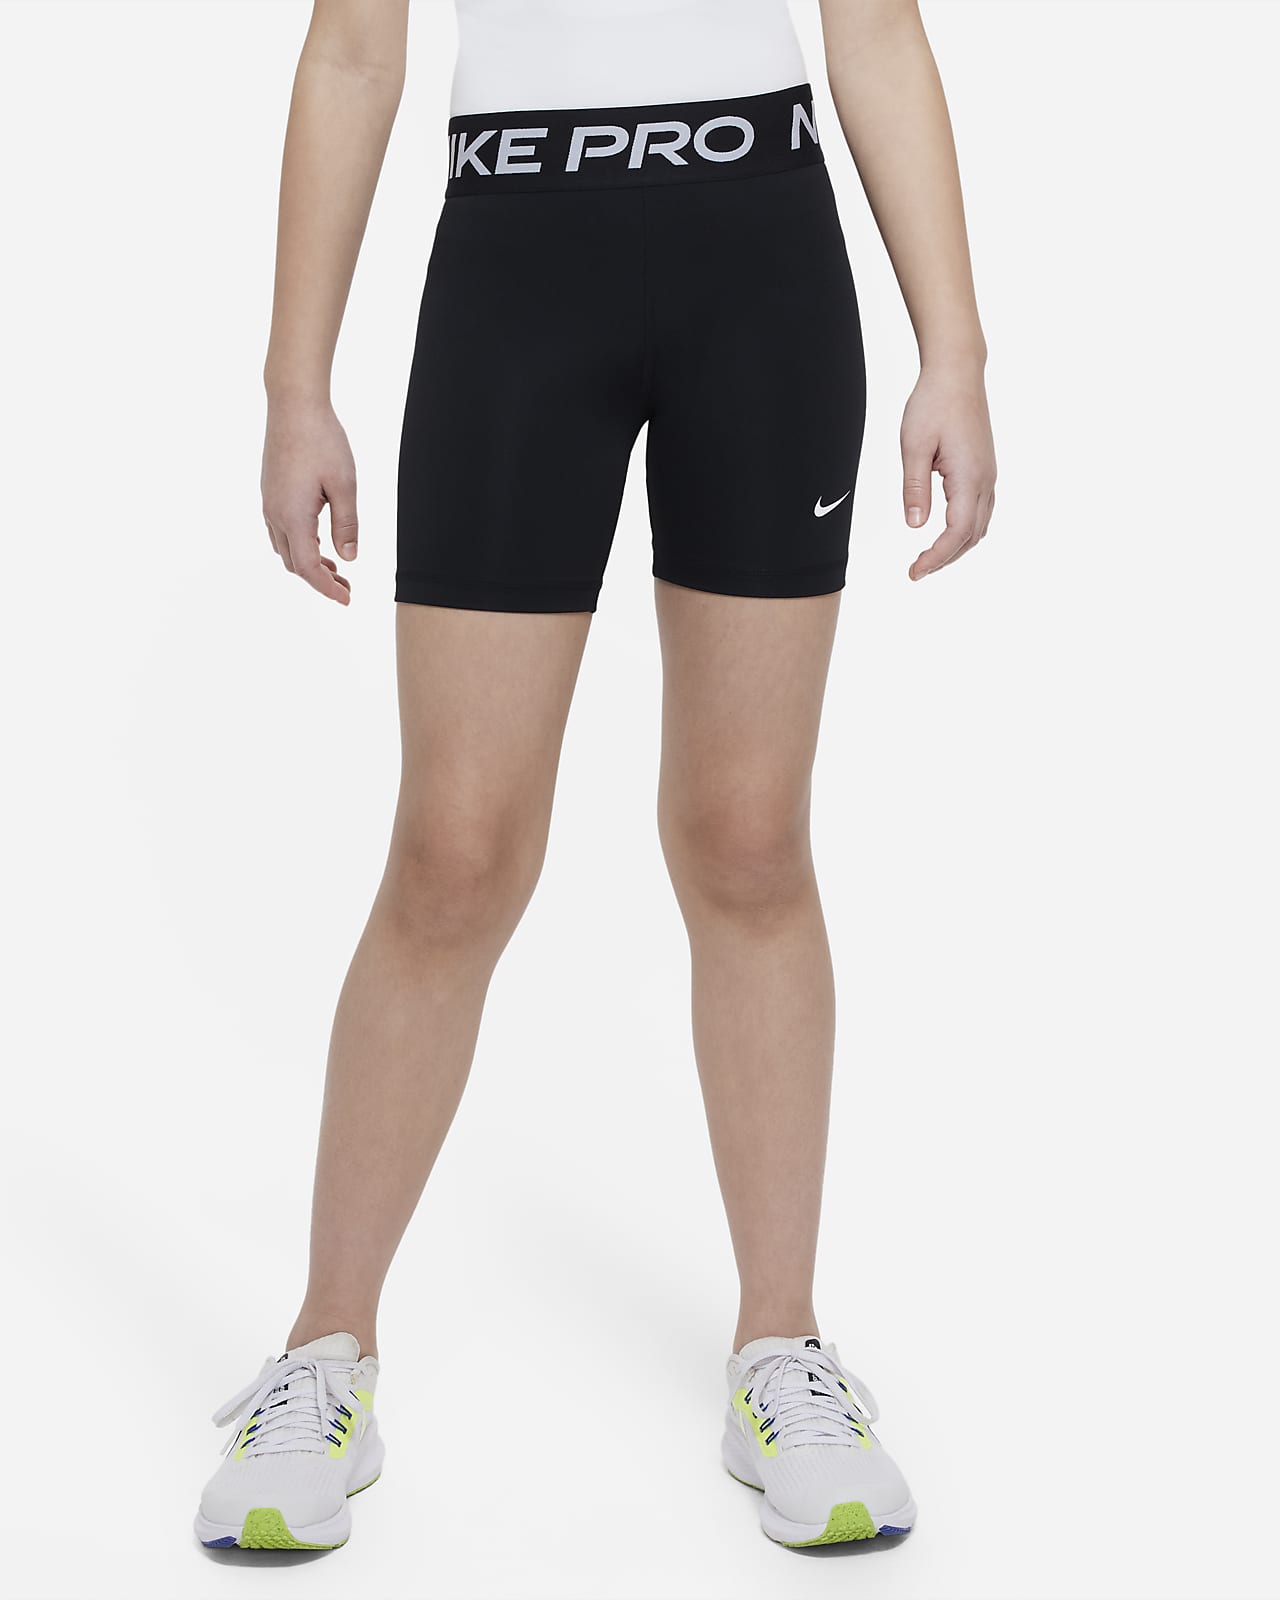 Nike Pro Pantalón corto Dri-FIT de 13 cm - Niña